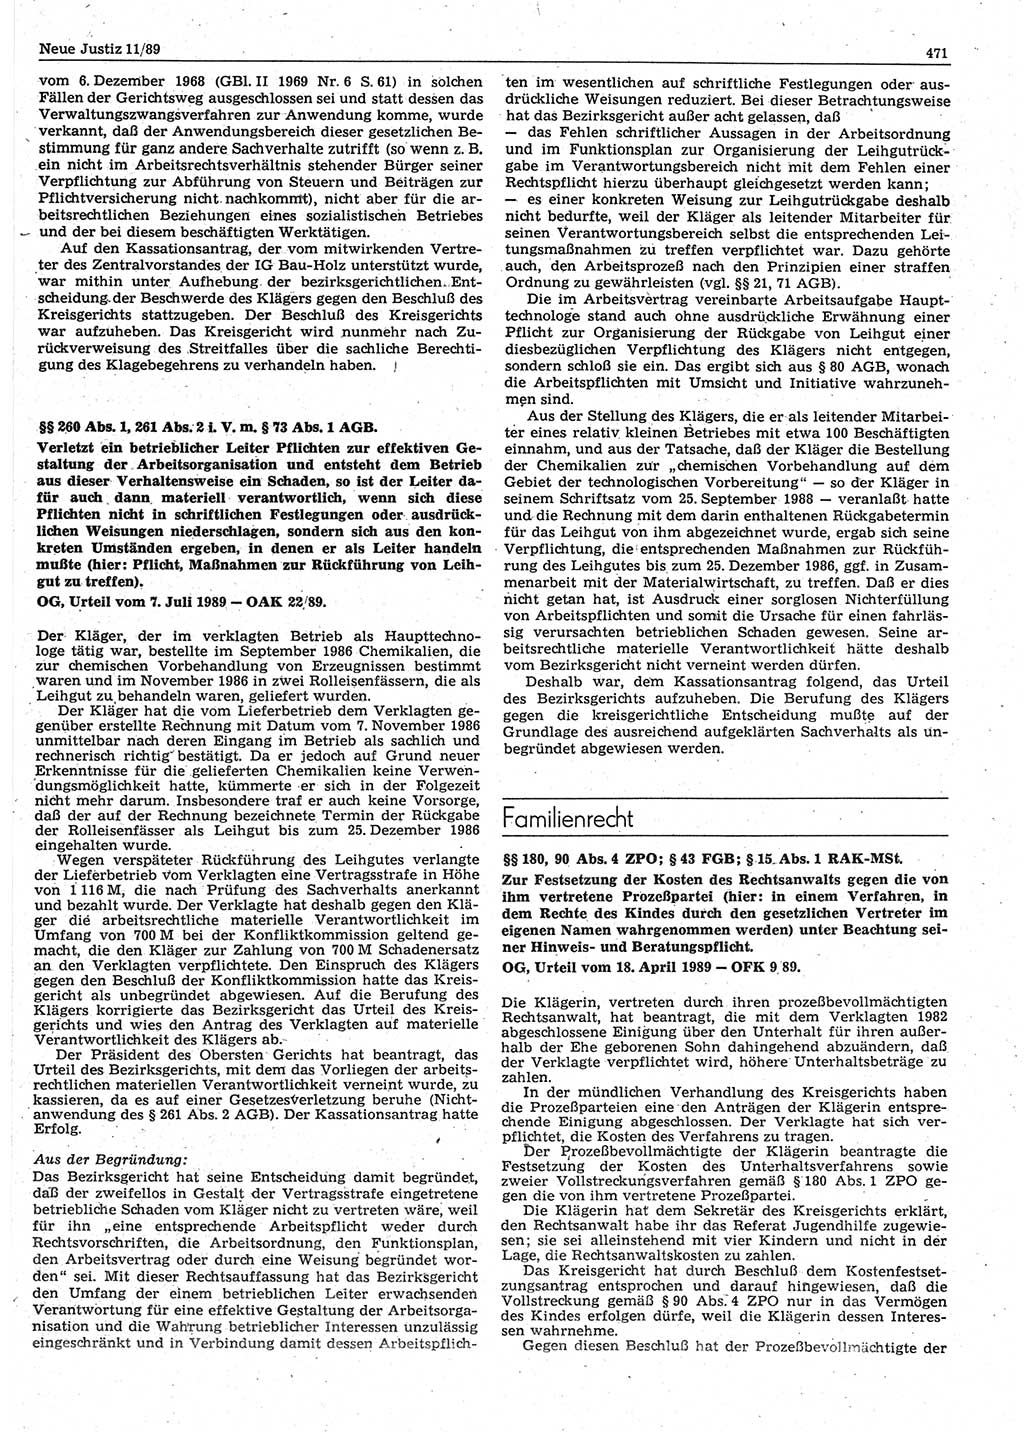 Neue Justiz (NJ), Zeitschrift für sozialistisches Recht und Gesetzlichkeit [Deutsche Demokratische Republik (DDR)], 43. Jahrgang 1989, Seite 471 (NJ DDR 1989, S. 471)